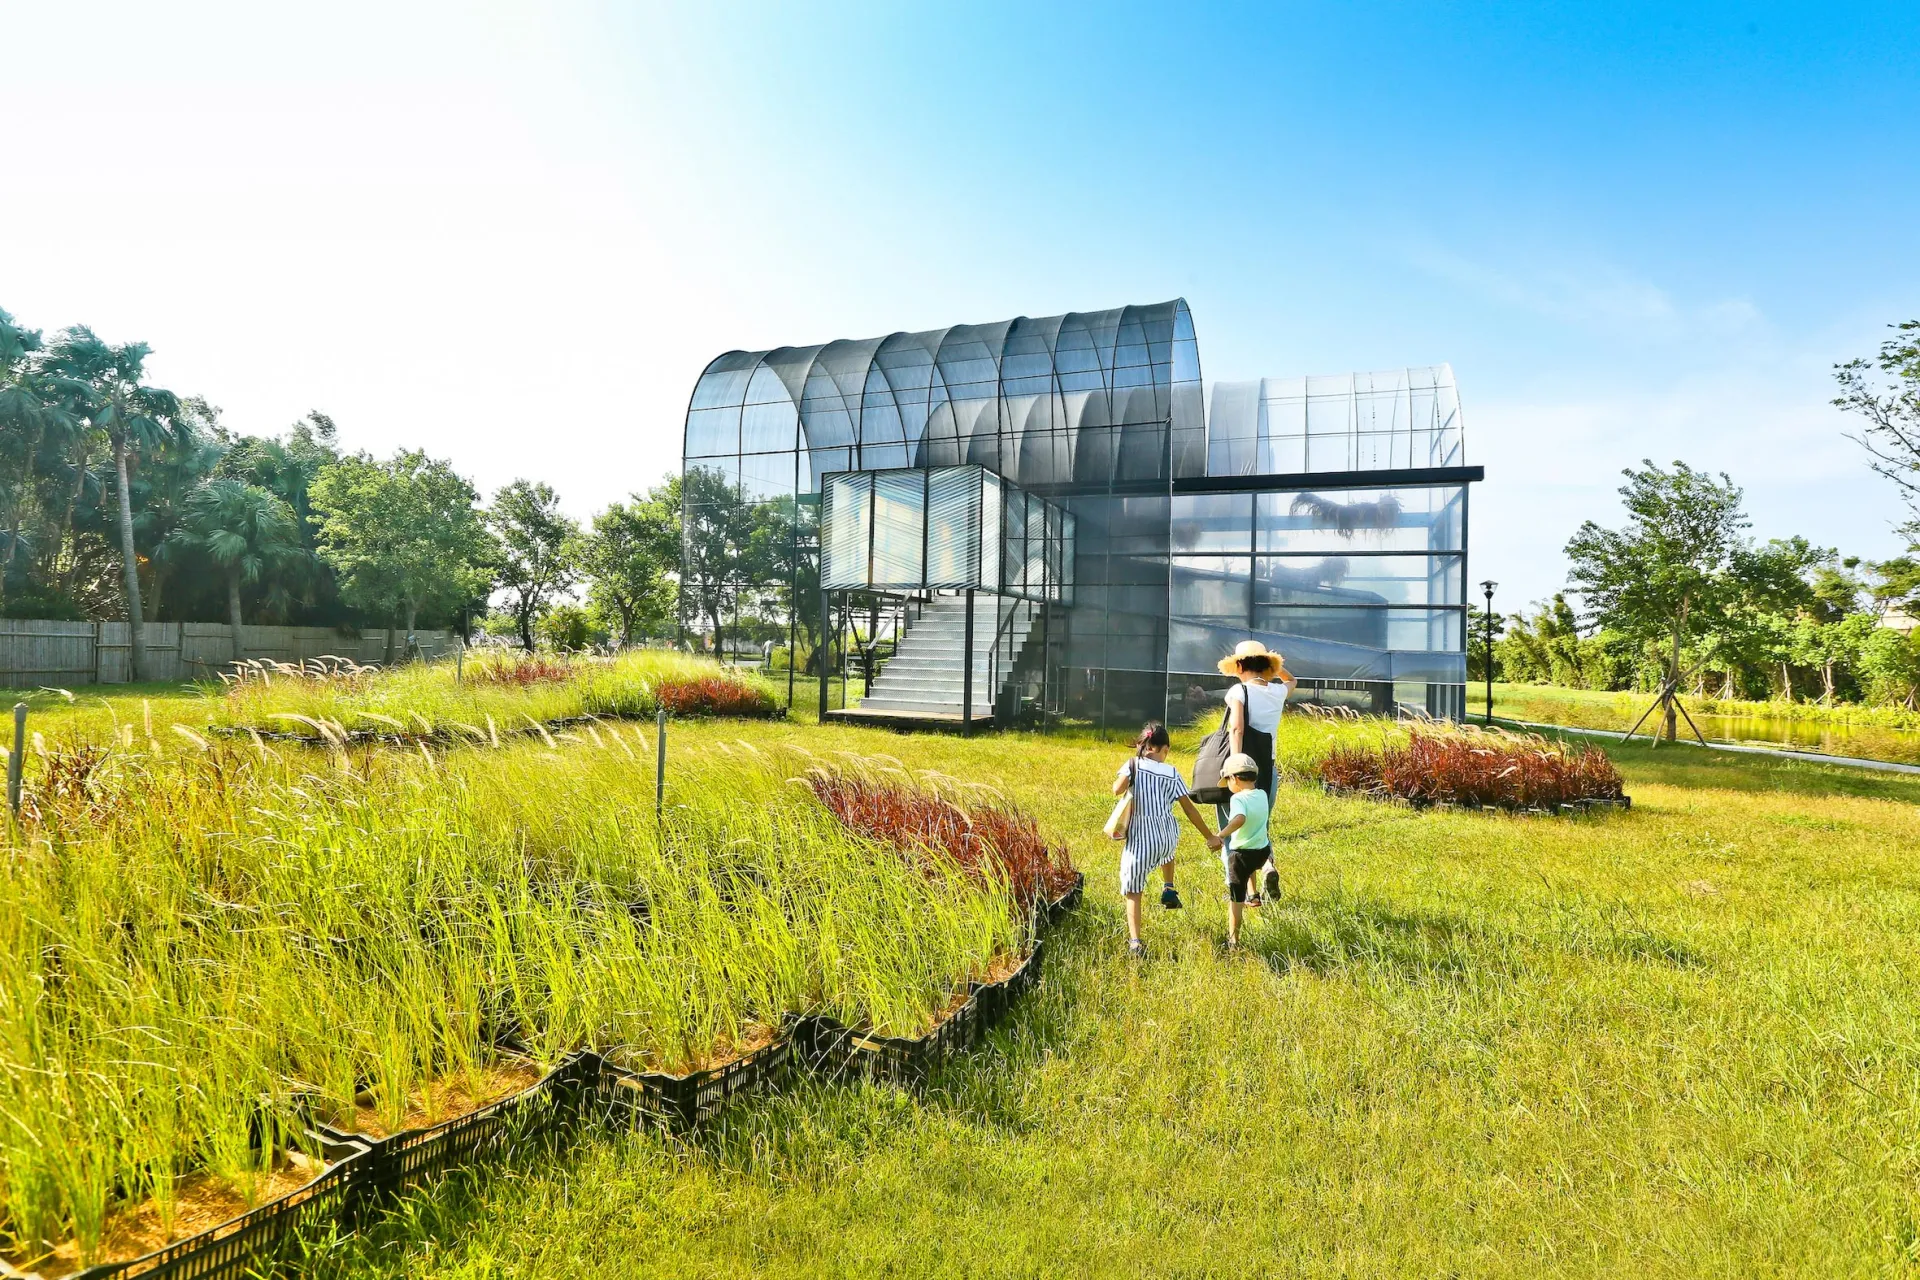 衍序團隊在空間上重新定義建築與自然景觀之間的連結，以培養原生草為行動實驗，空間進入溫室構築，基地成為一座兼具生態和景觀的原生草域實驗室。